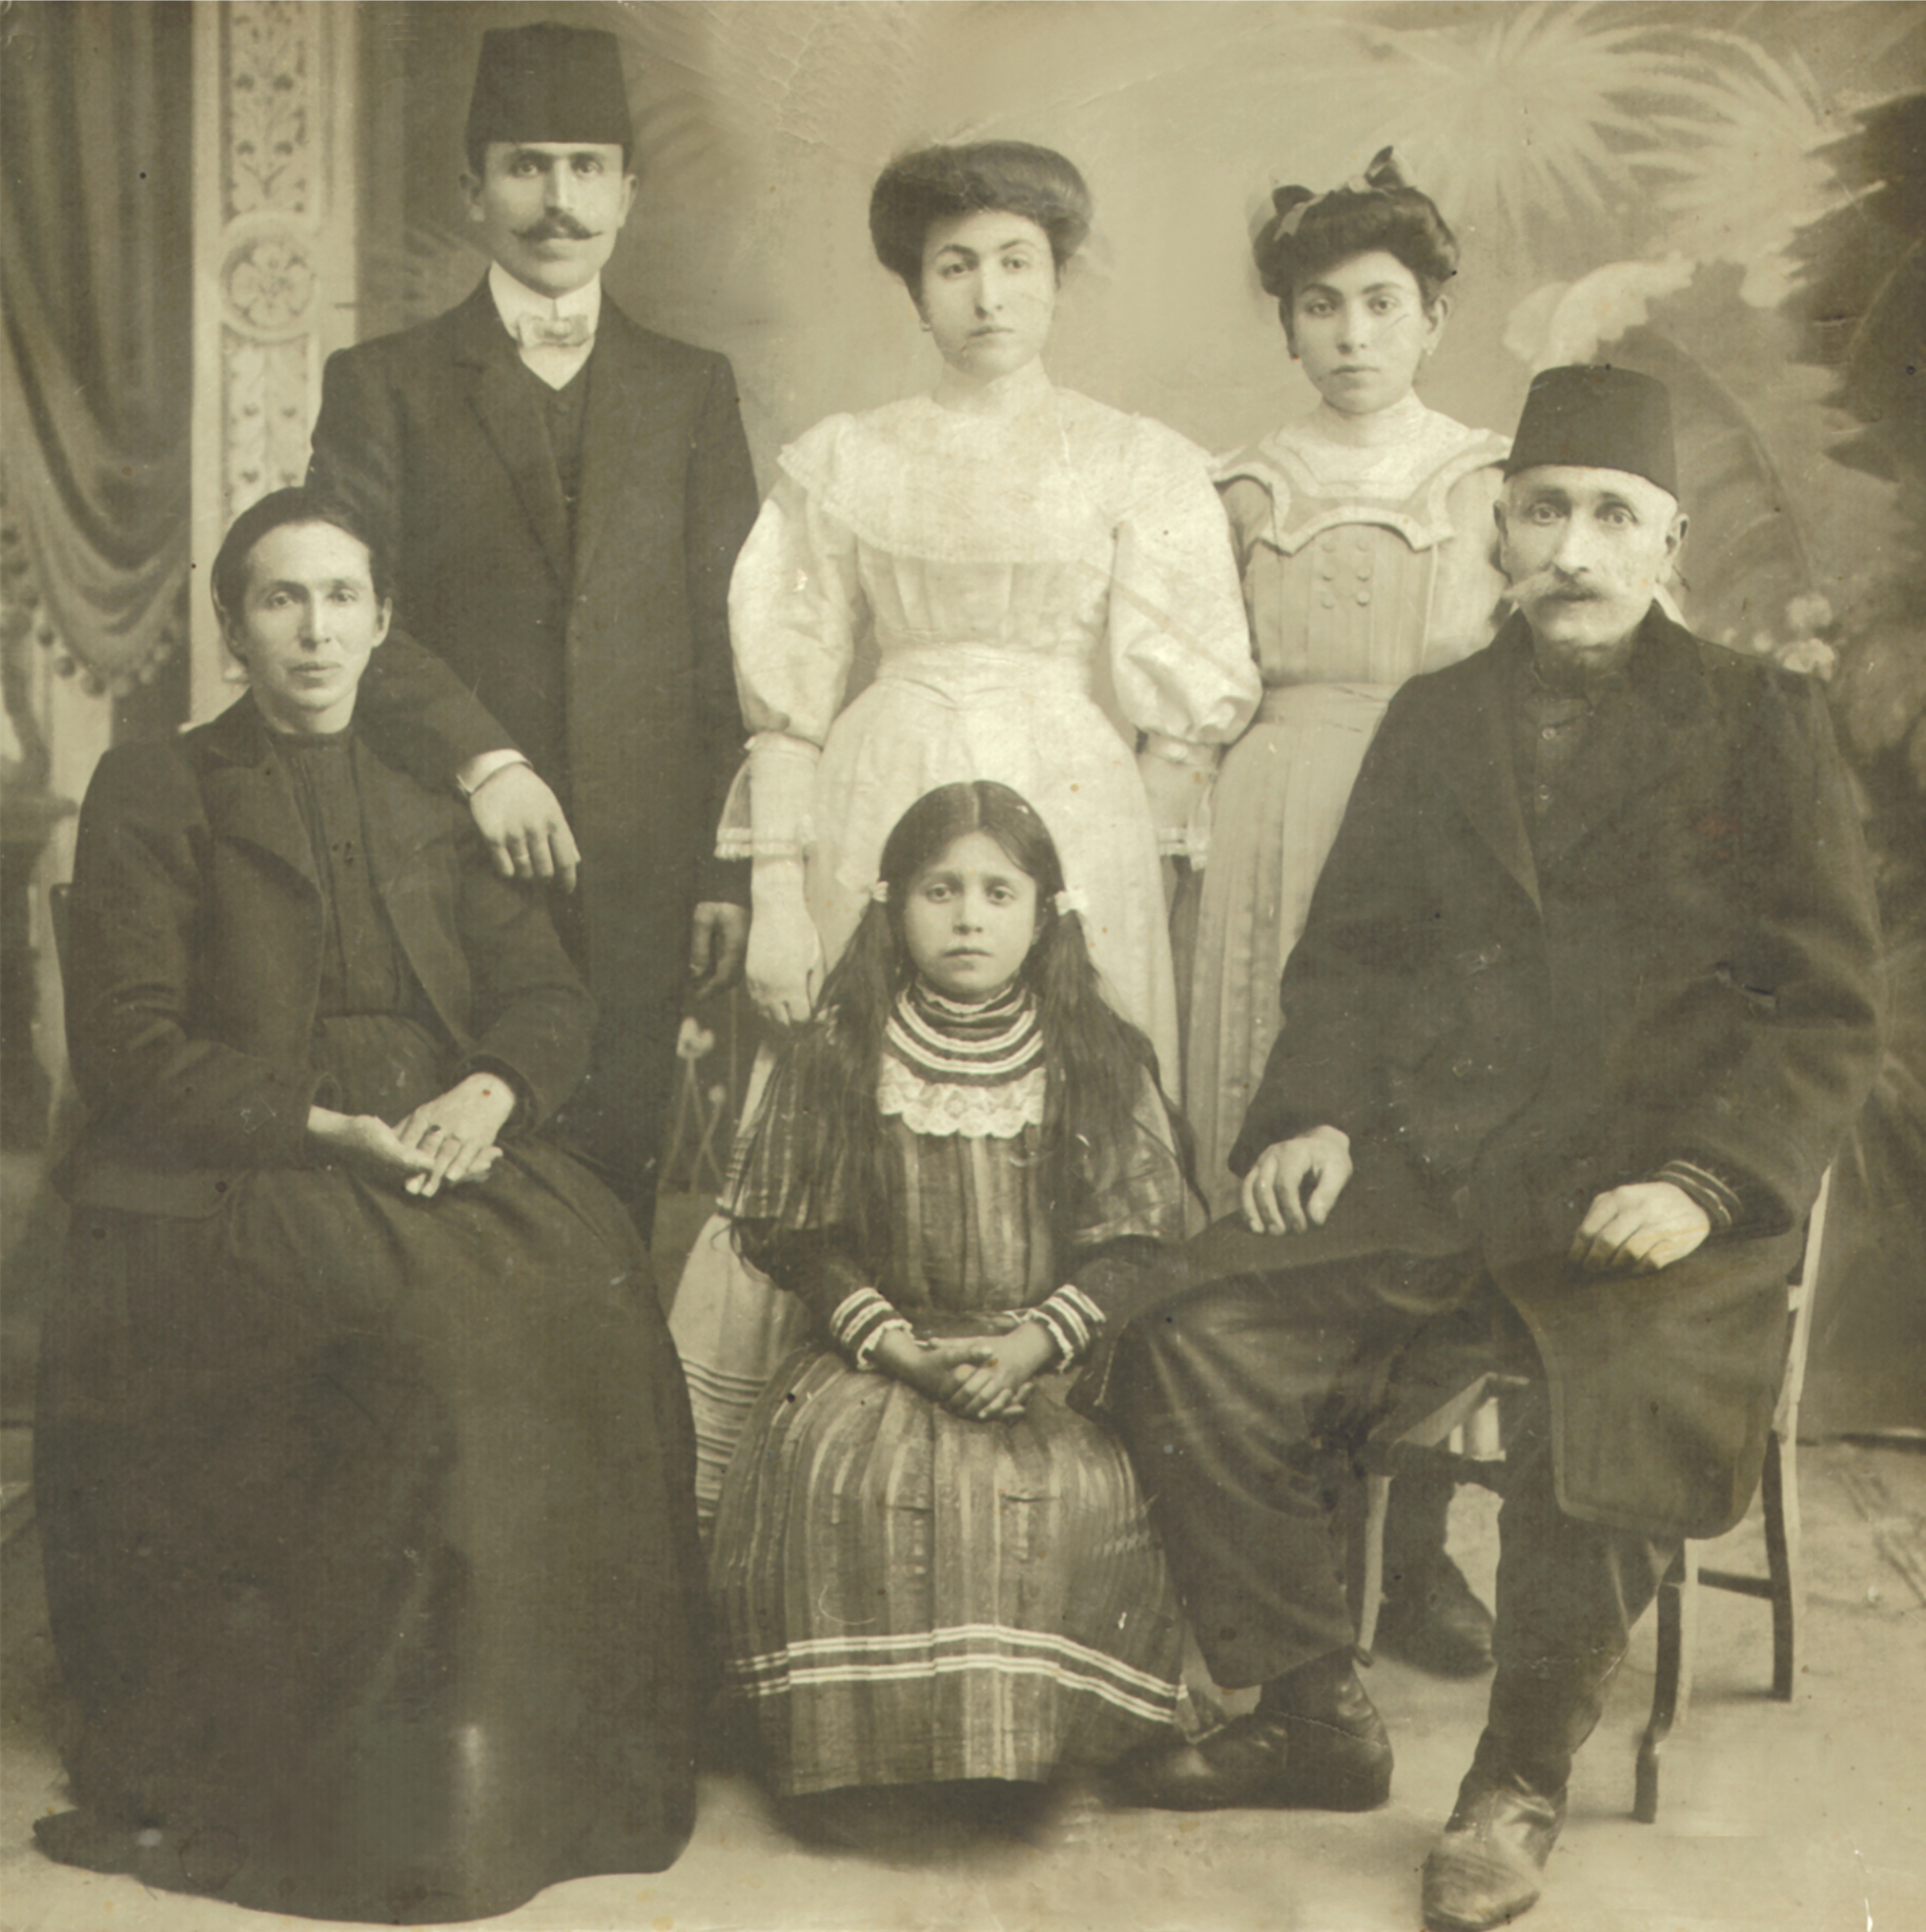 Տէր եւ Տիկին Սահակ եւ Նազենի Պալըգճեաններ եւ զաւակները, կանգնած՝ Յակոբ, Հրանոյշ, Արշակուհի եւ Արշալոյս (նստած), Կեսարիա, 1908 թ.։